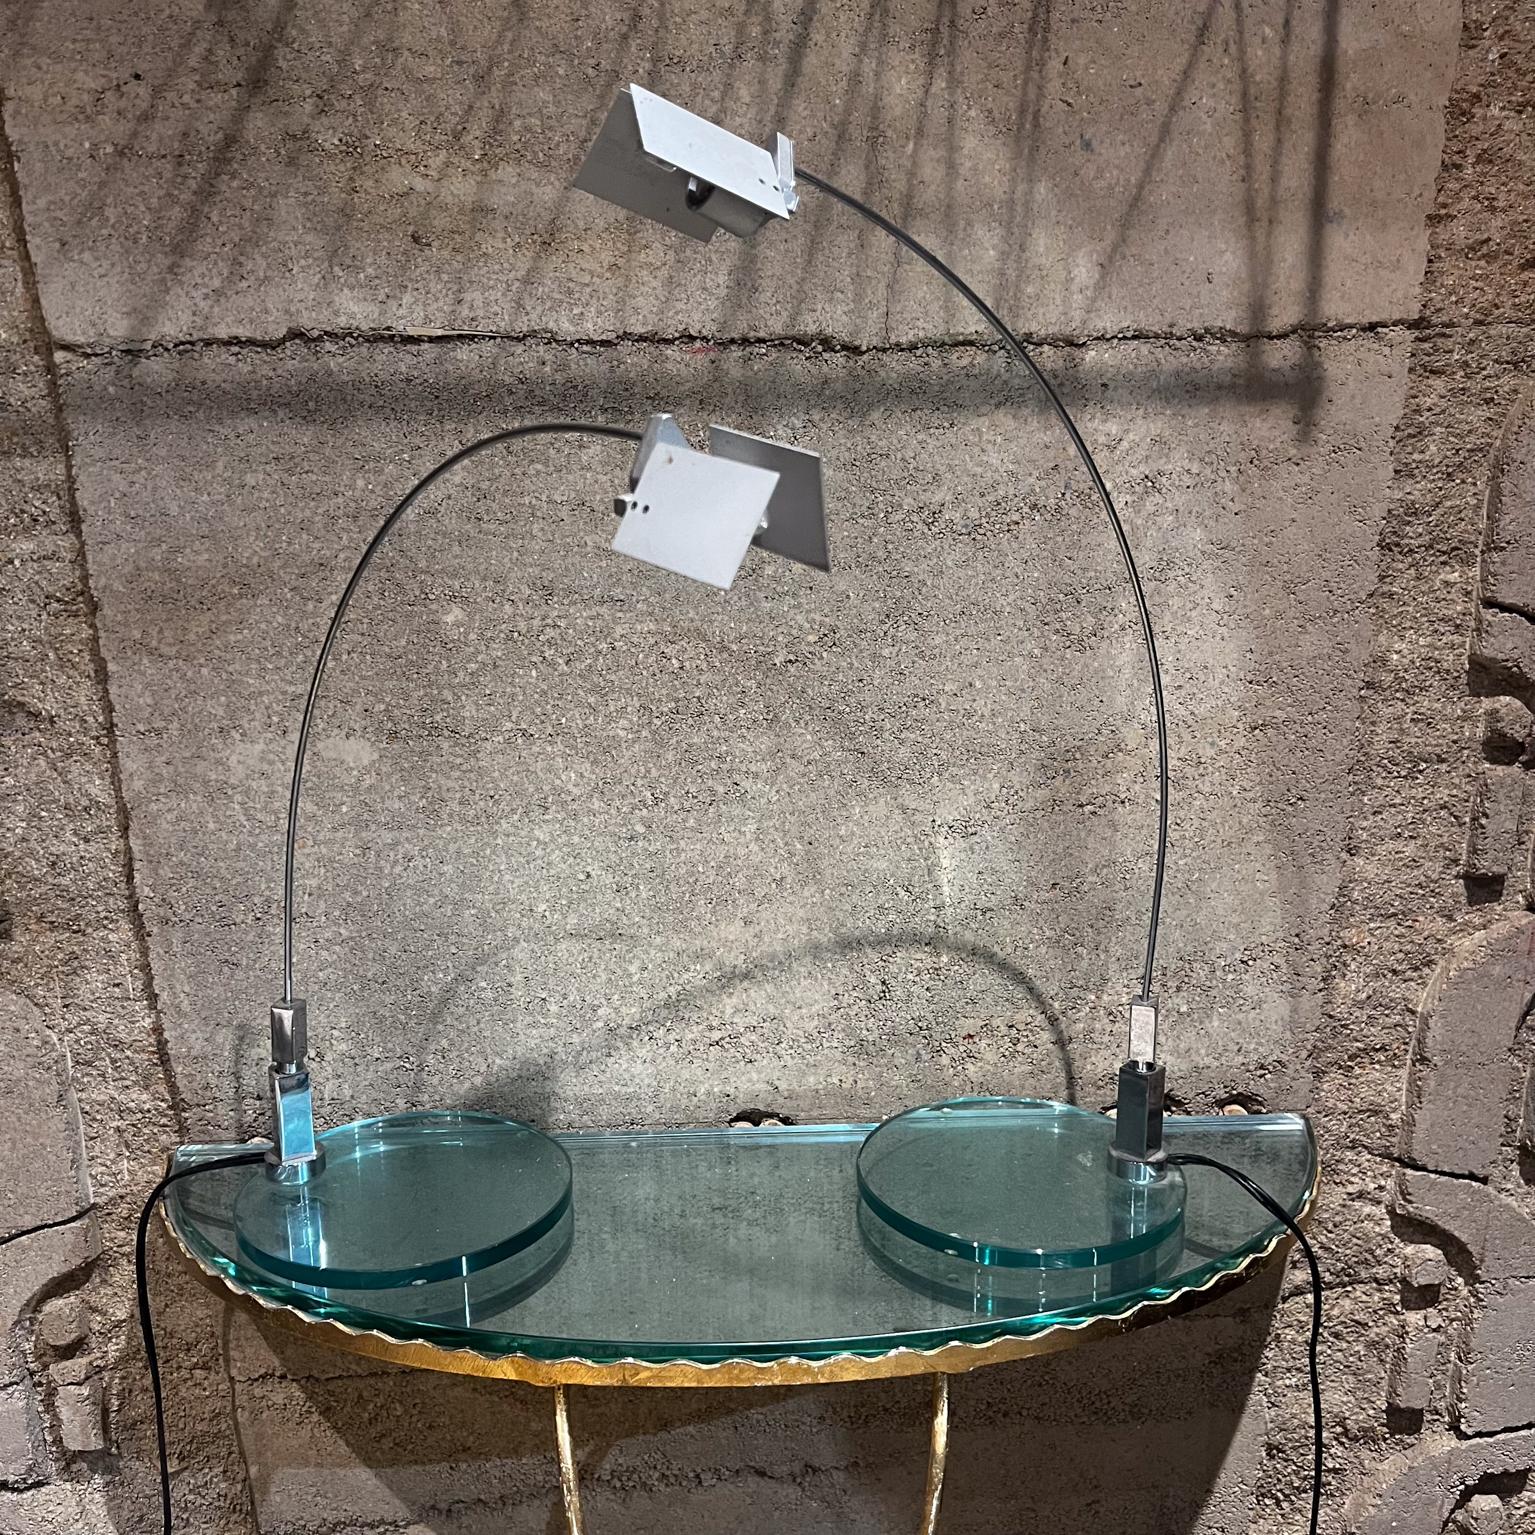 1990 Magnifique paire de lampes de table modernes de Fontana Arte conçues par Alvaro Siza Italie
vers 1994.
Corps réglable pour gérer la lumière.
Métal chromé et verre.
Lampe de table basse tension transformateur électronique enfichable interrupteur